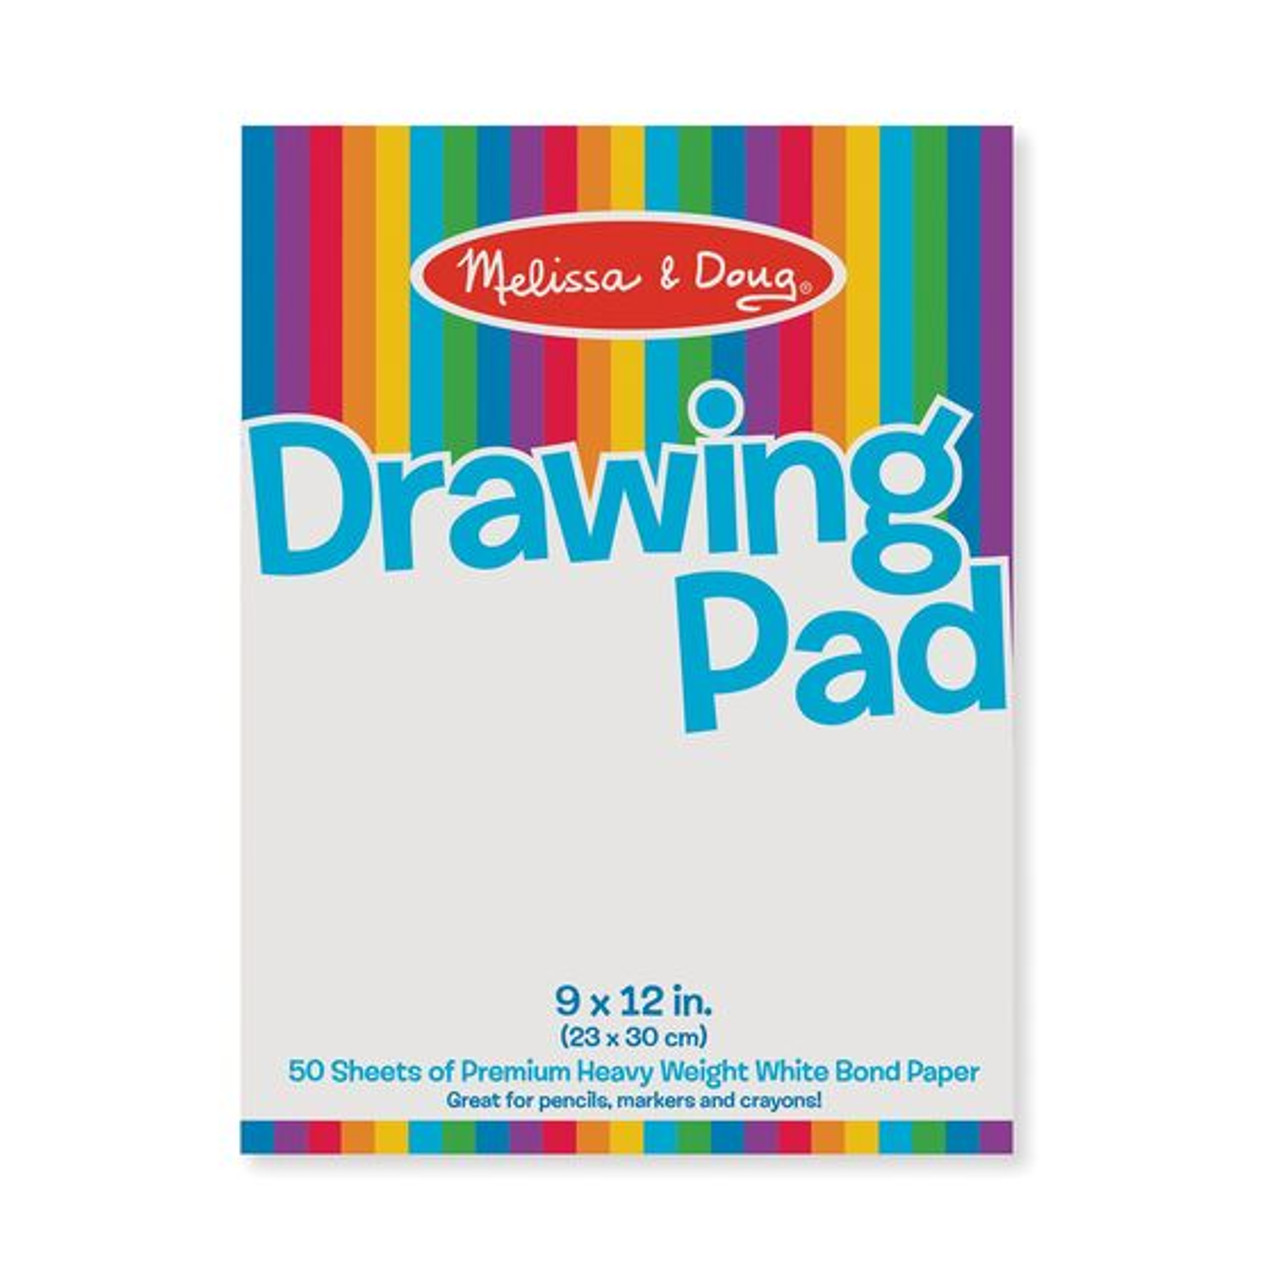 Sketch Pad,9 x 12, 50 Sheets - 12 / White